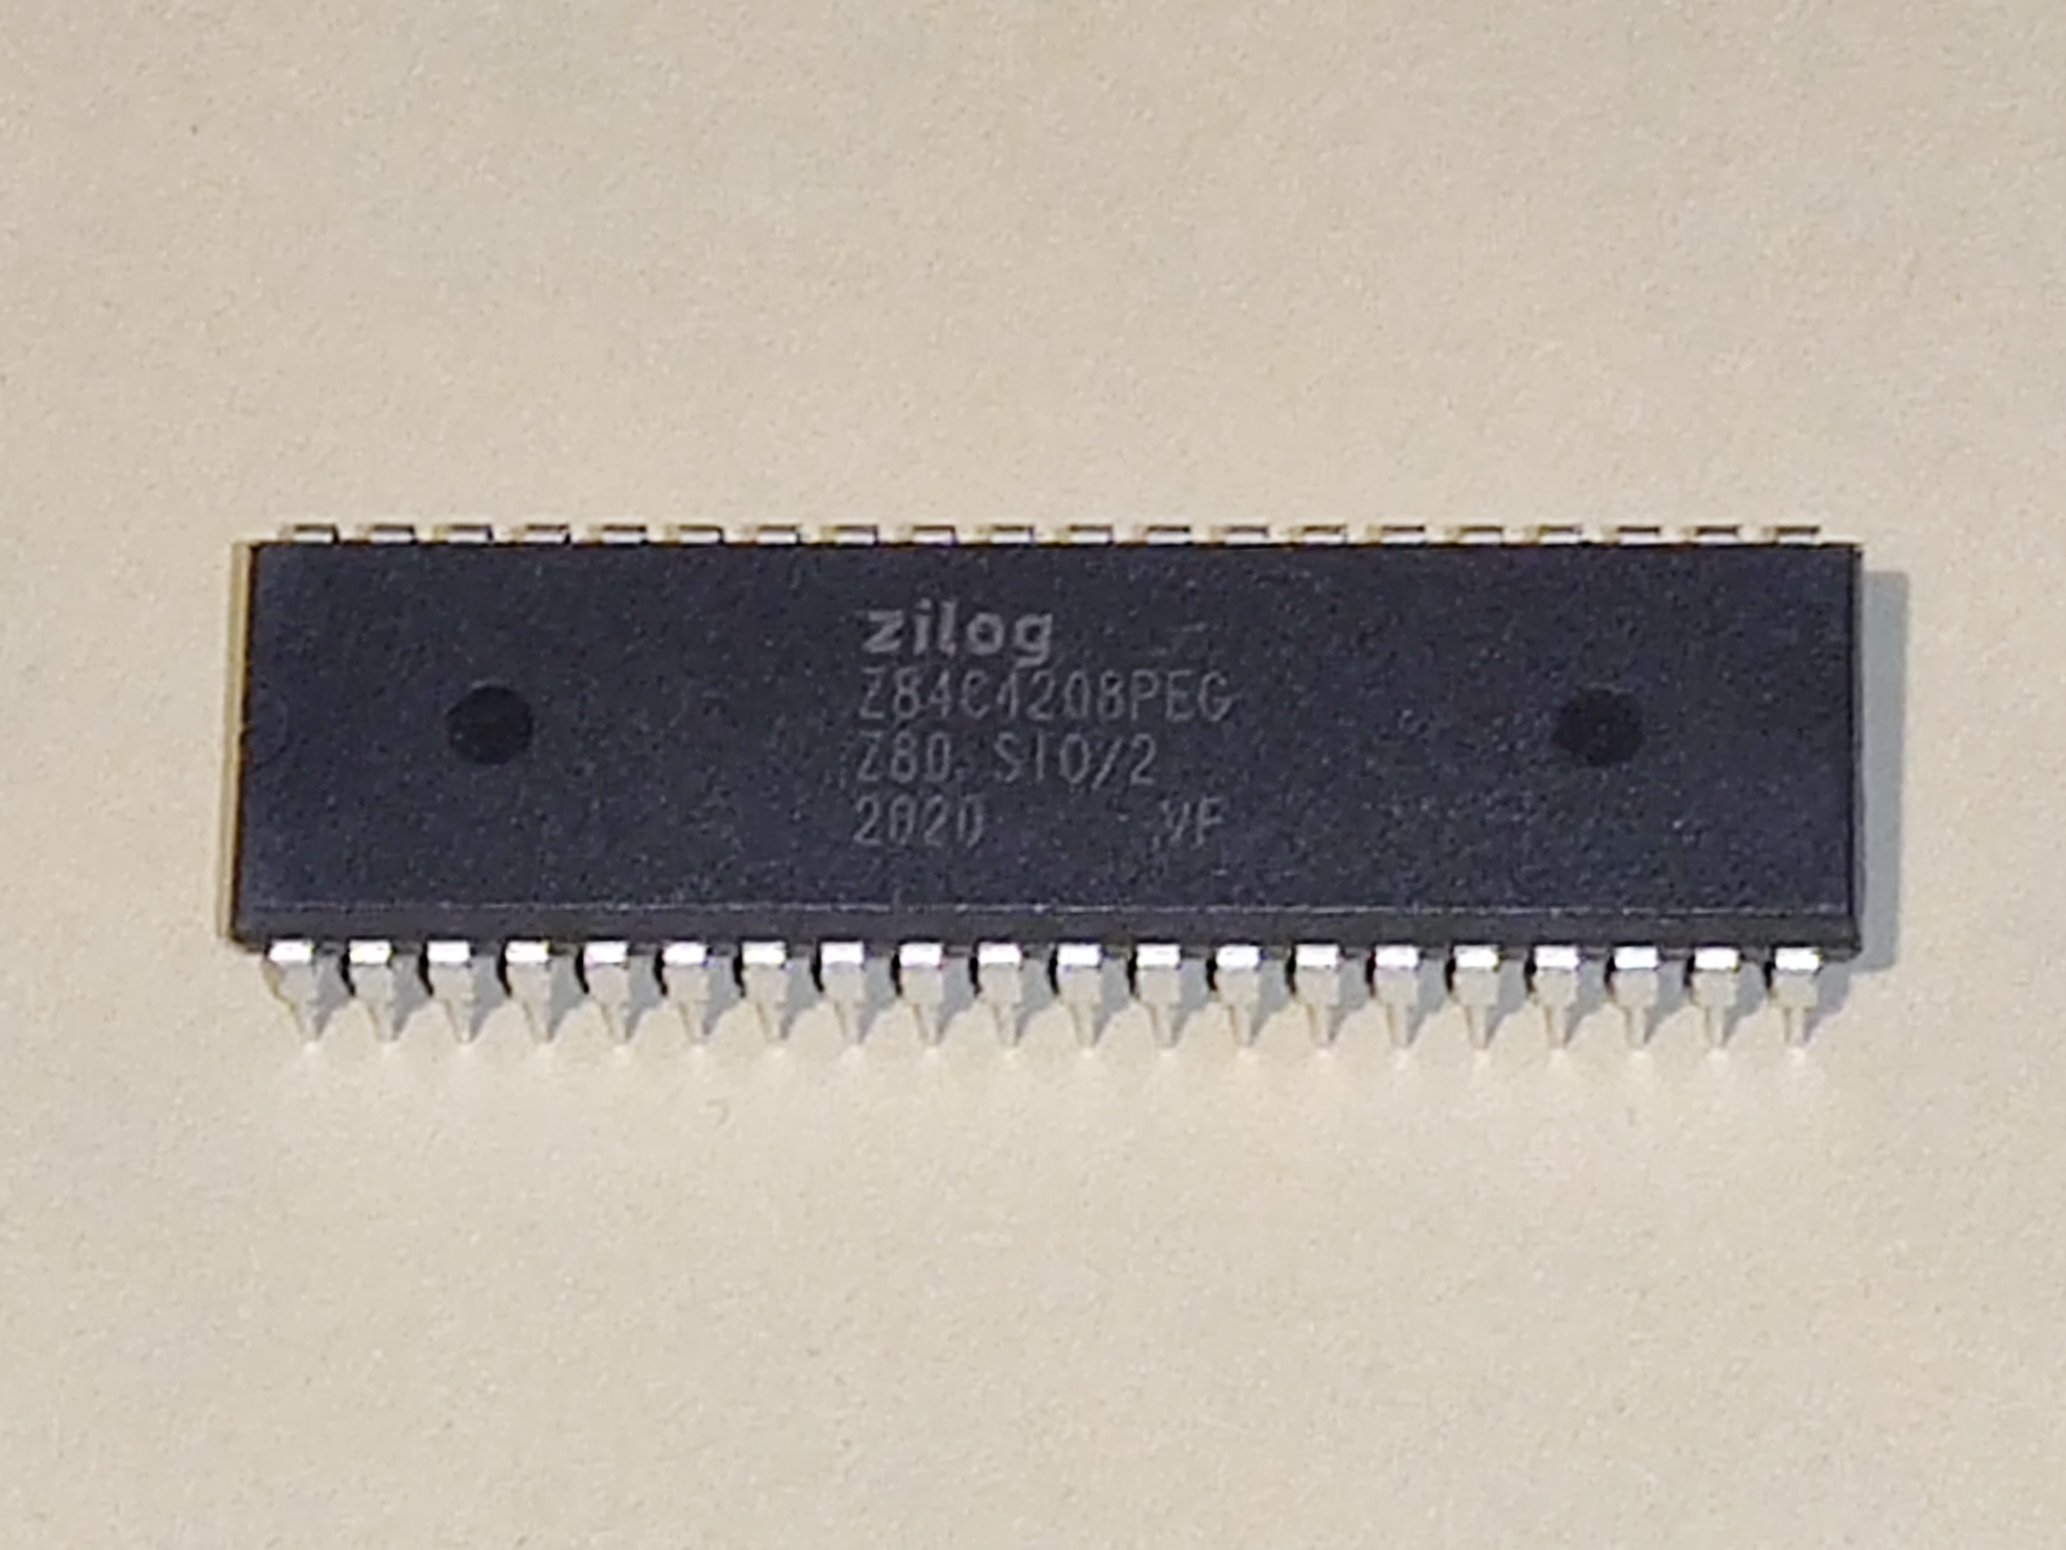 1PCS GS Z8442APS Z80ASIO/2 Z80A-SIO/2 Z80A SIO PDIP40 